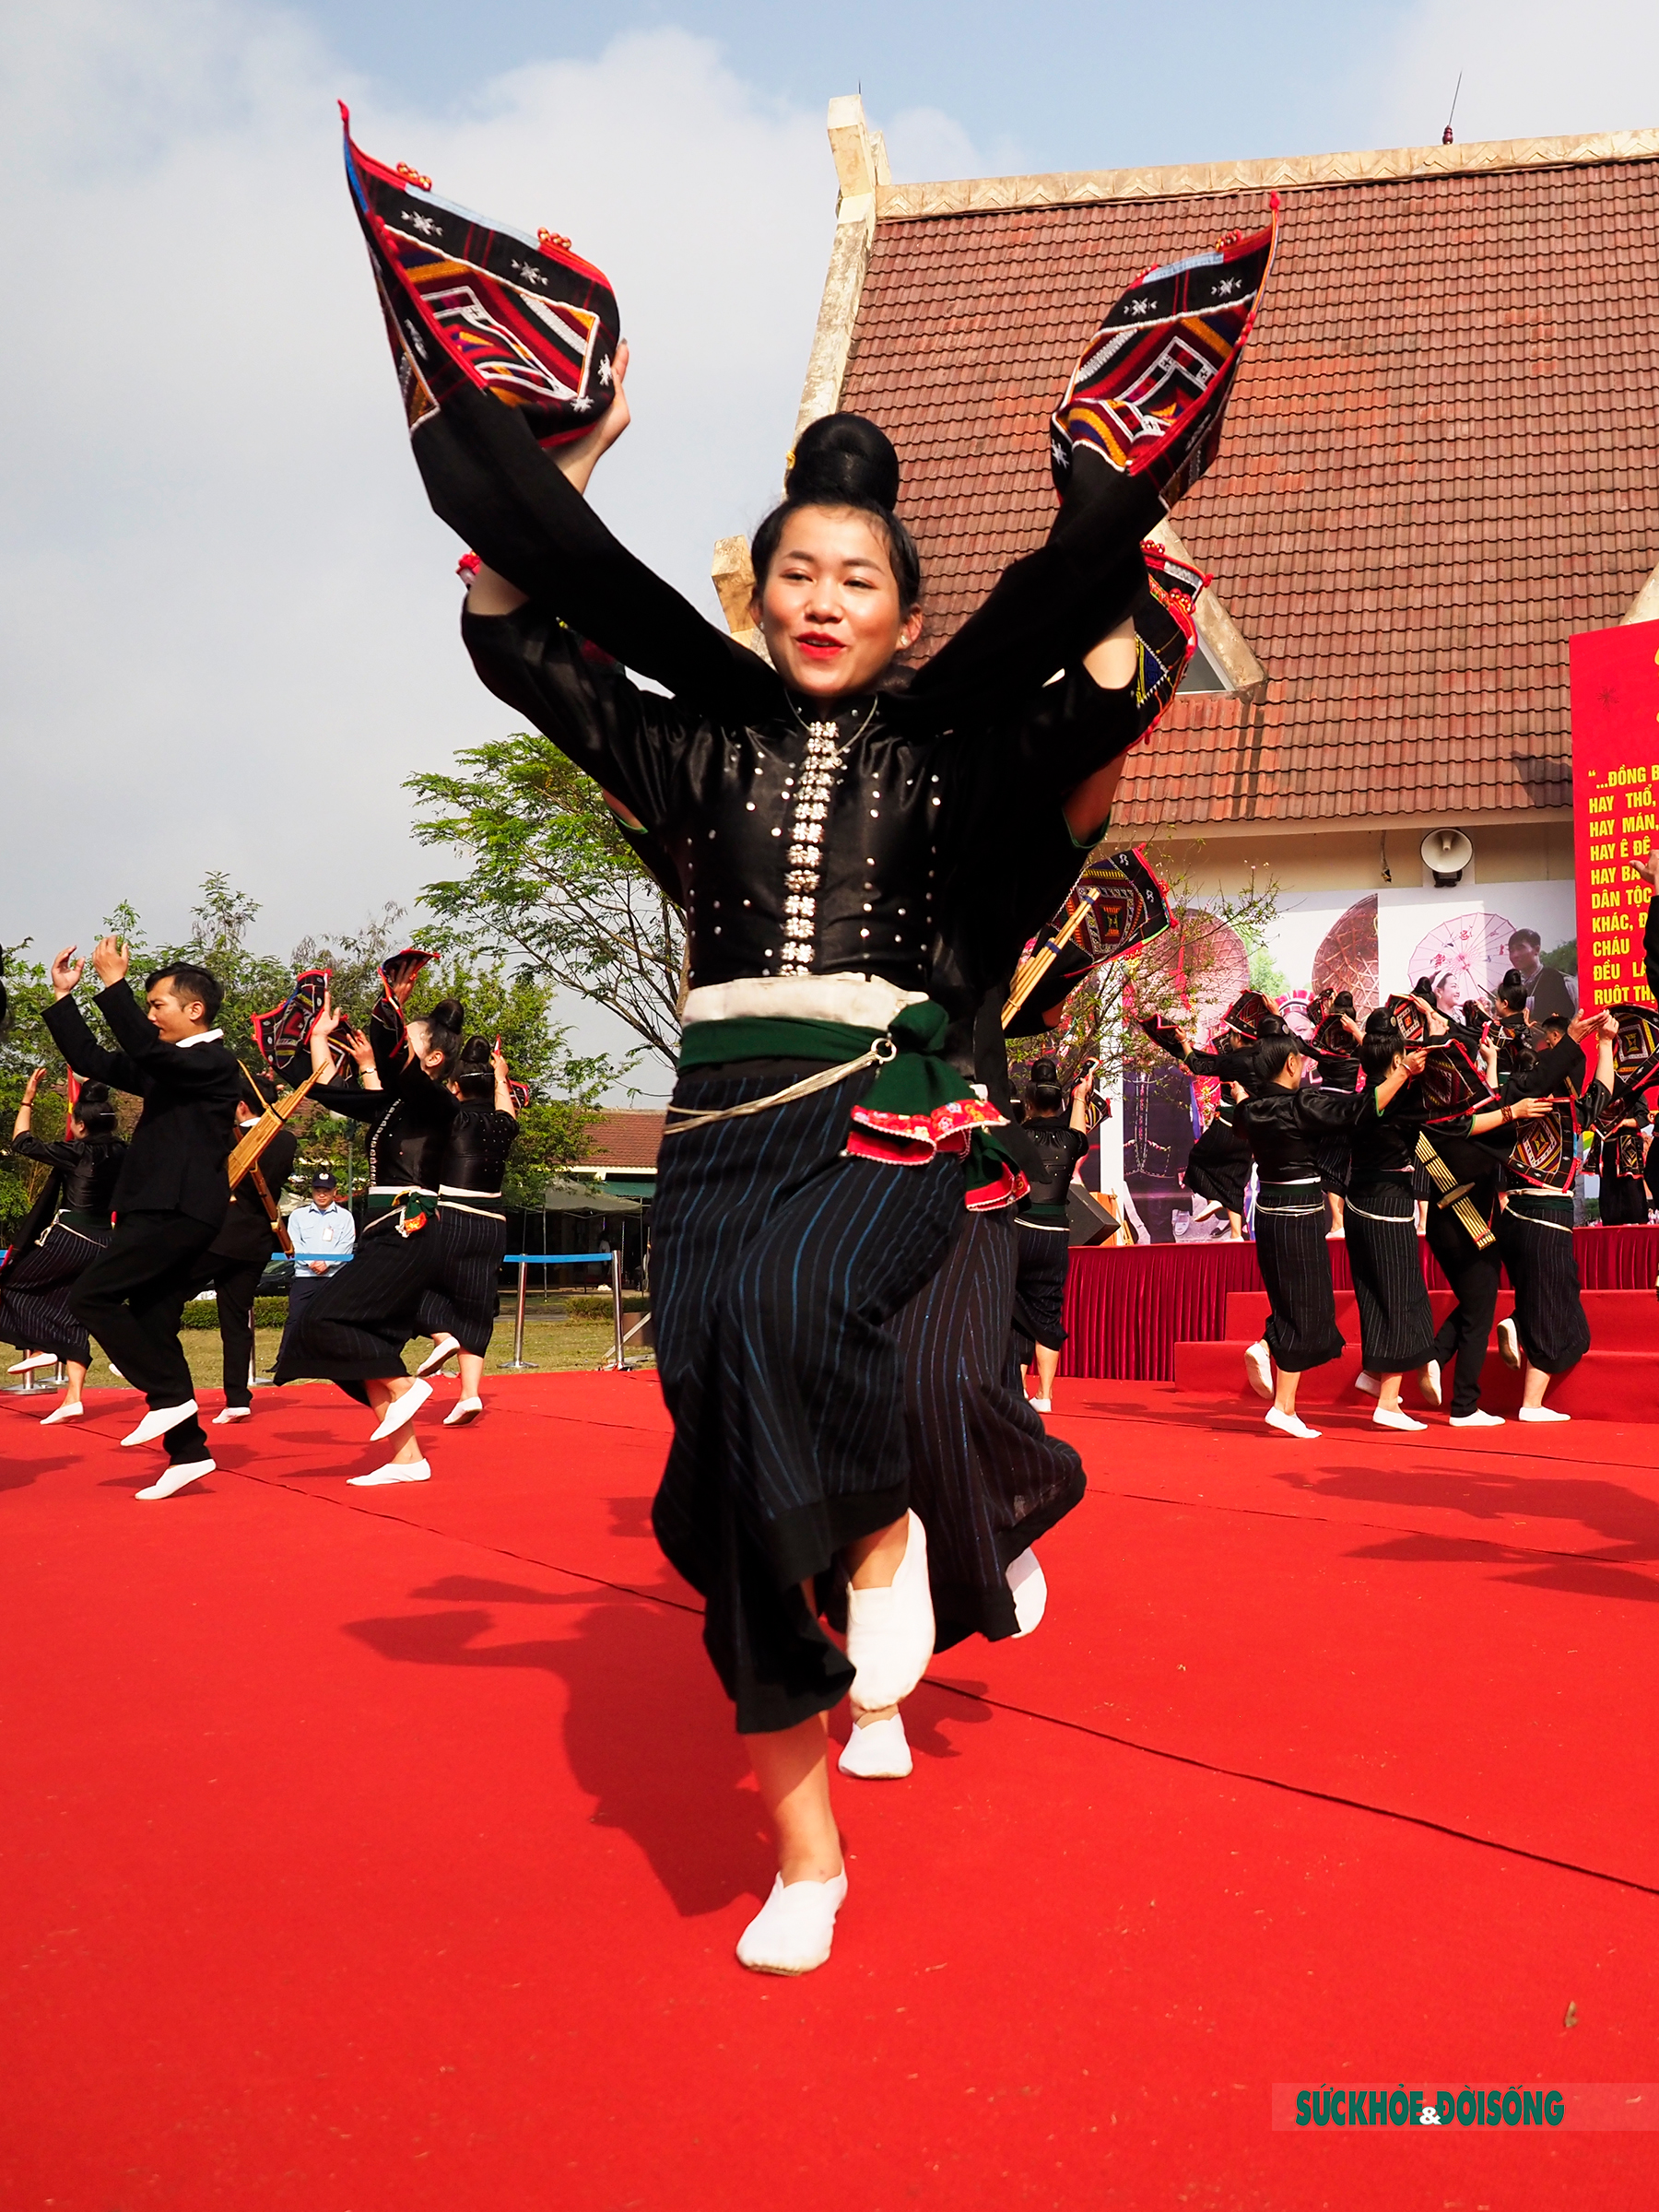 Mê mẩn điệu múa xòe Thái của các cô gái đến từ tỉnh Sơn La - Ảnh 4.